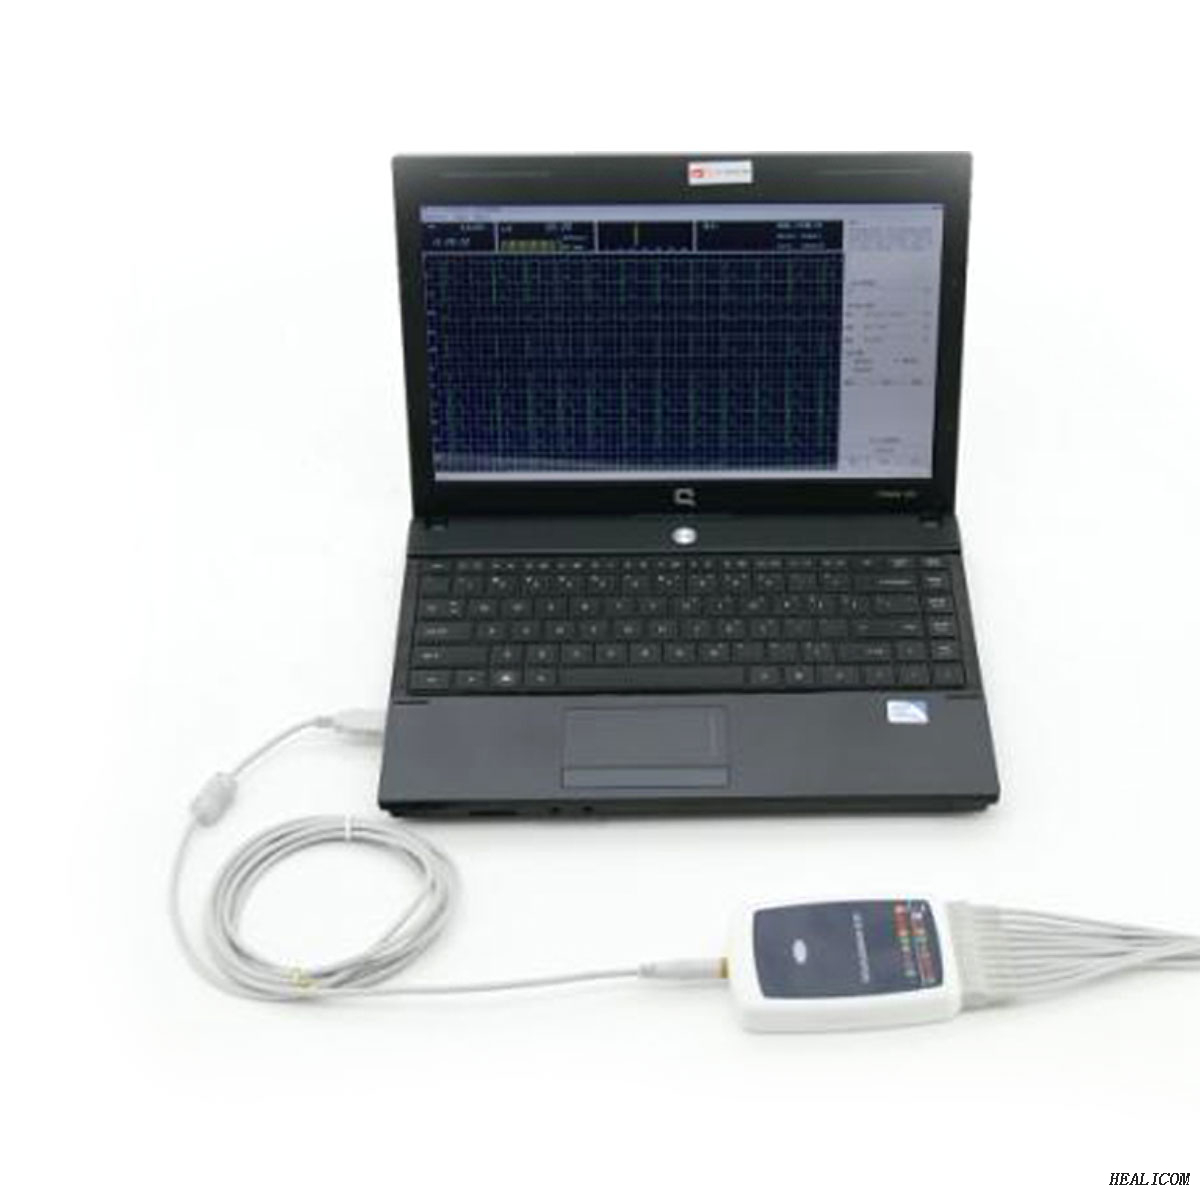 La stazione di lavoro ECG ECG portatile portatile TLC8000G 12 conduce i dati ECG con Windows